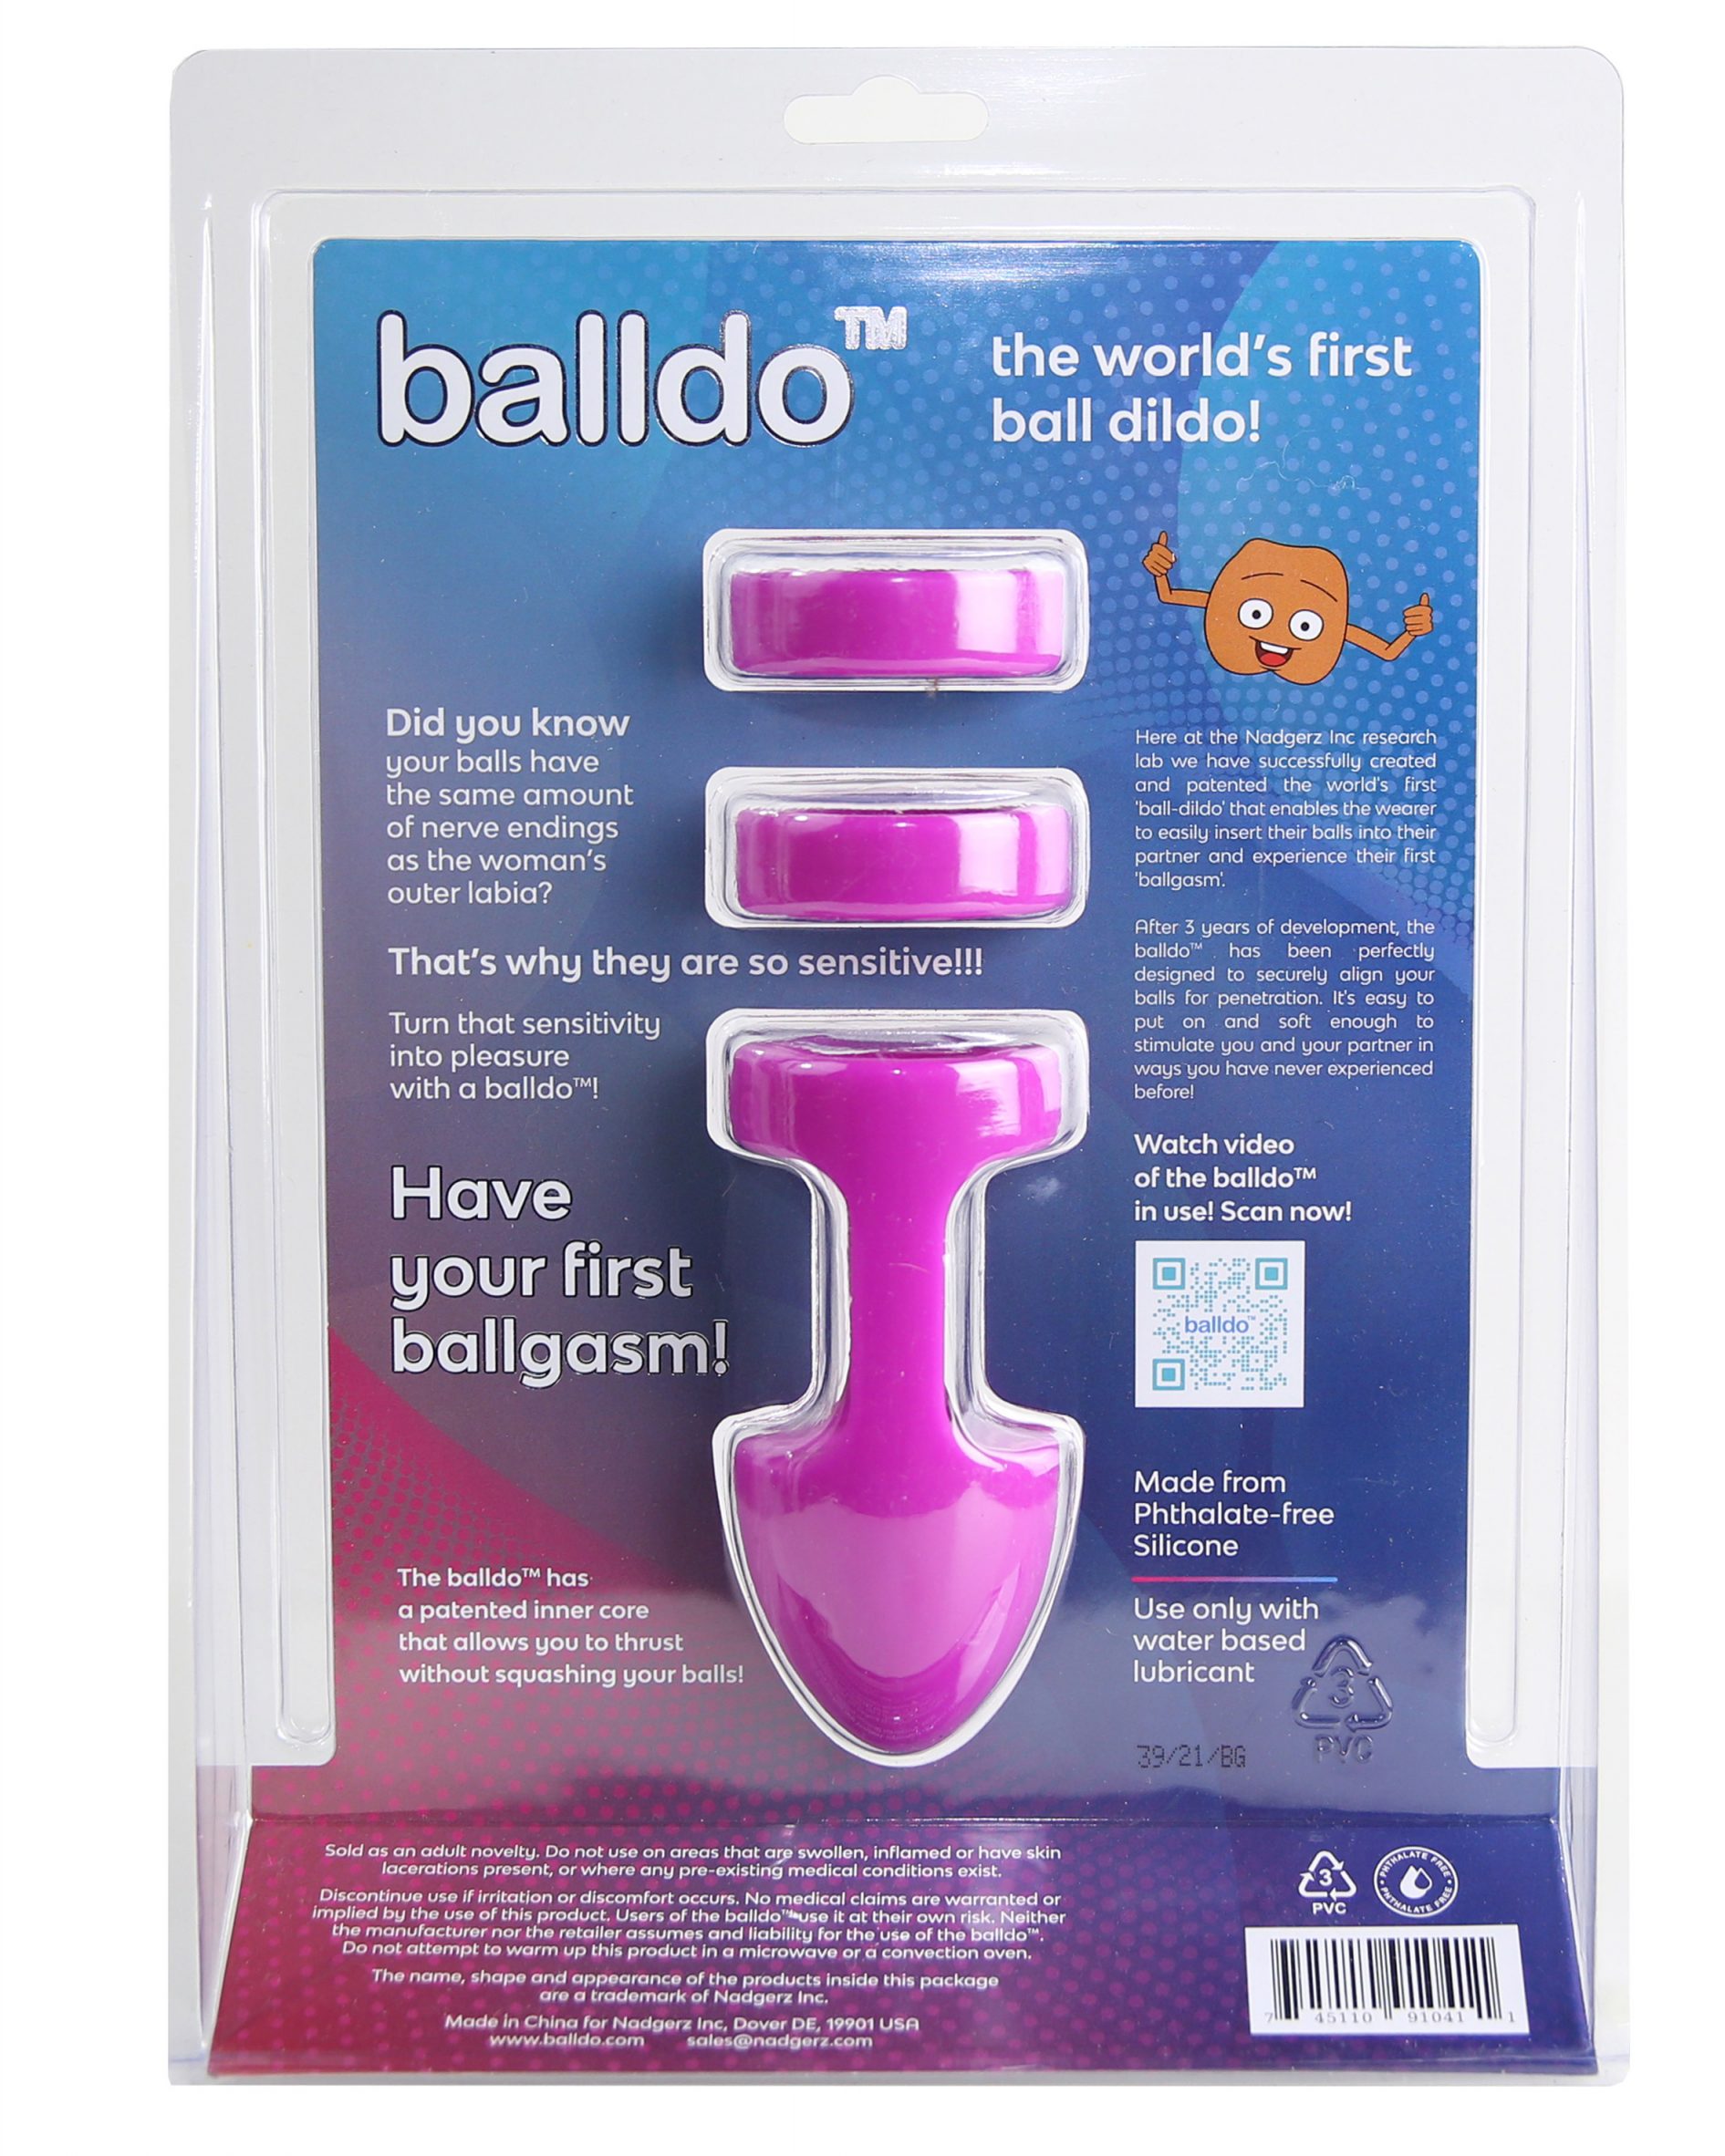 Balldo sex toy turns testicles into a dildo photo image image